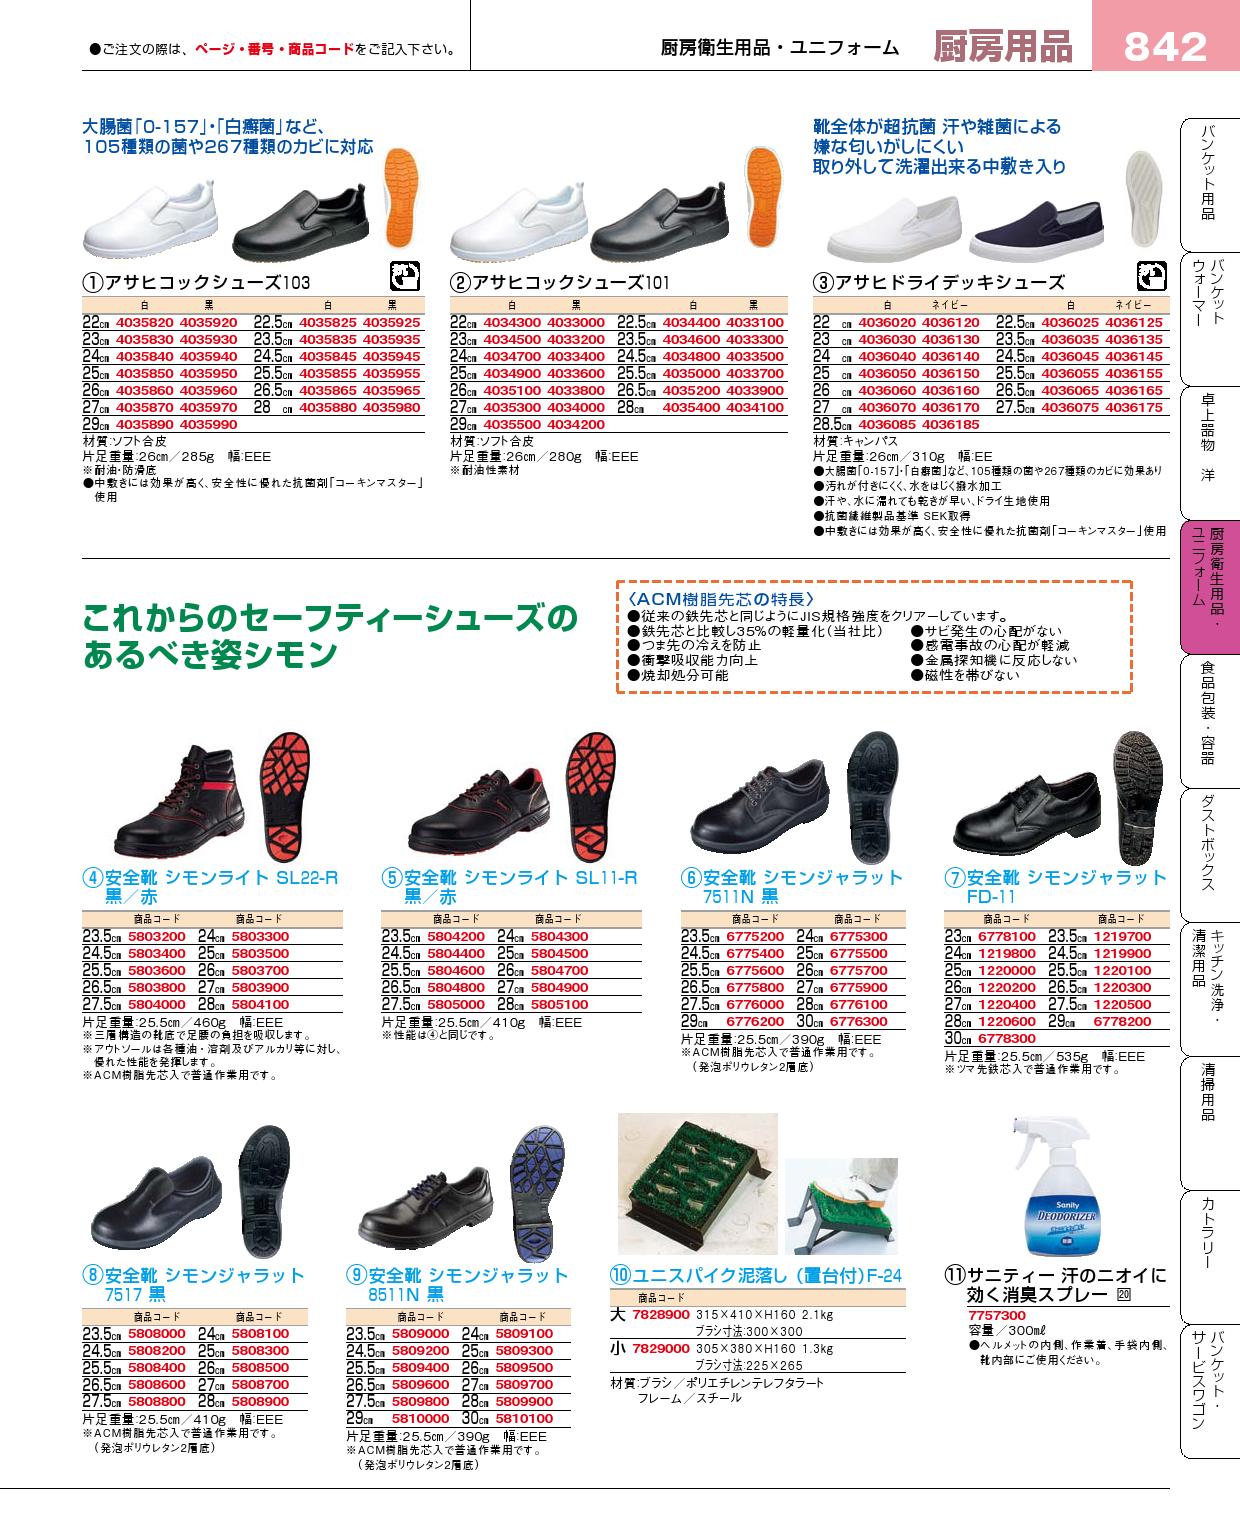 イニシャル 安全靴 シモン 7517 黒 27cm 業務用 5808700 - DIY・工具